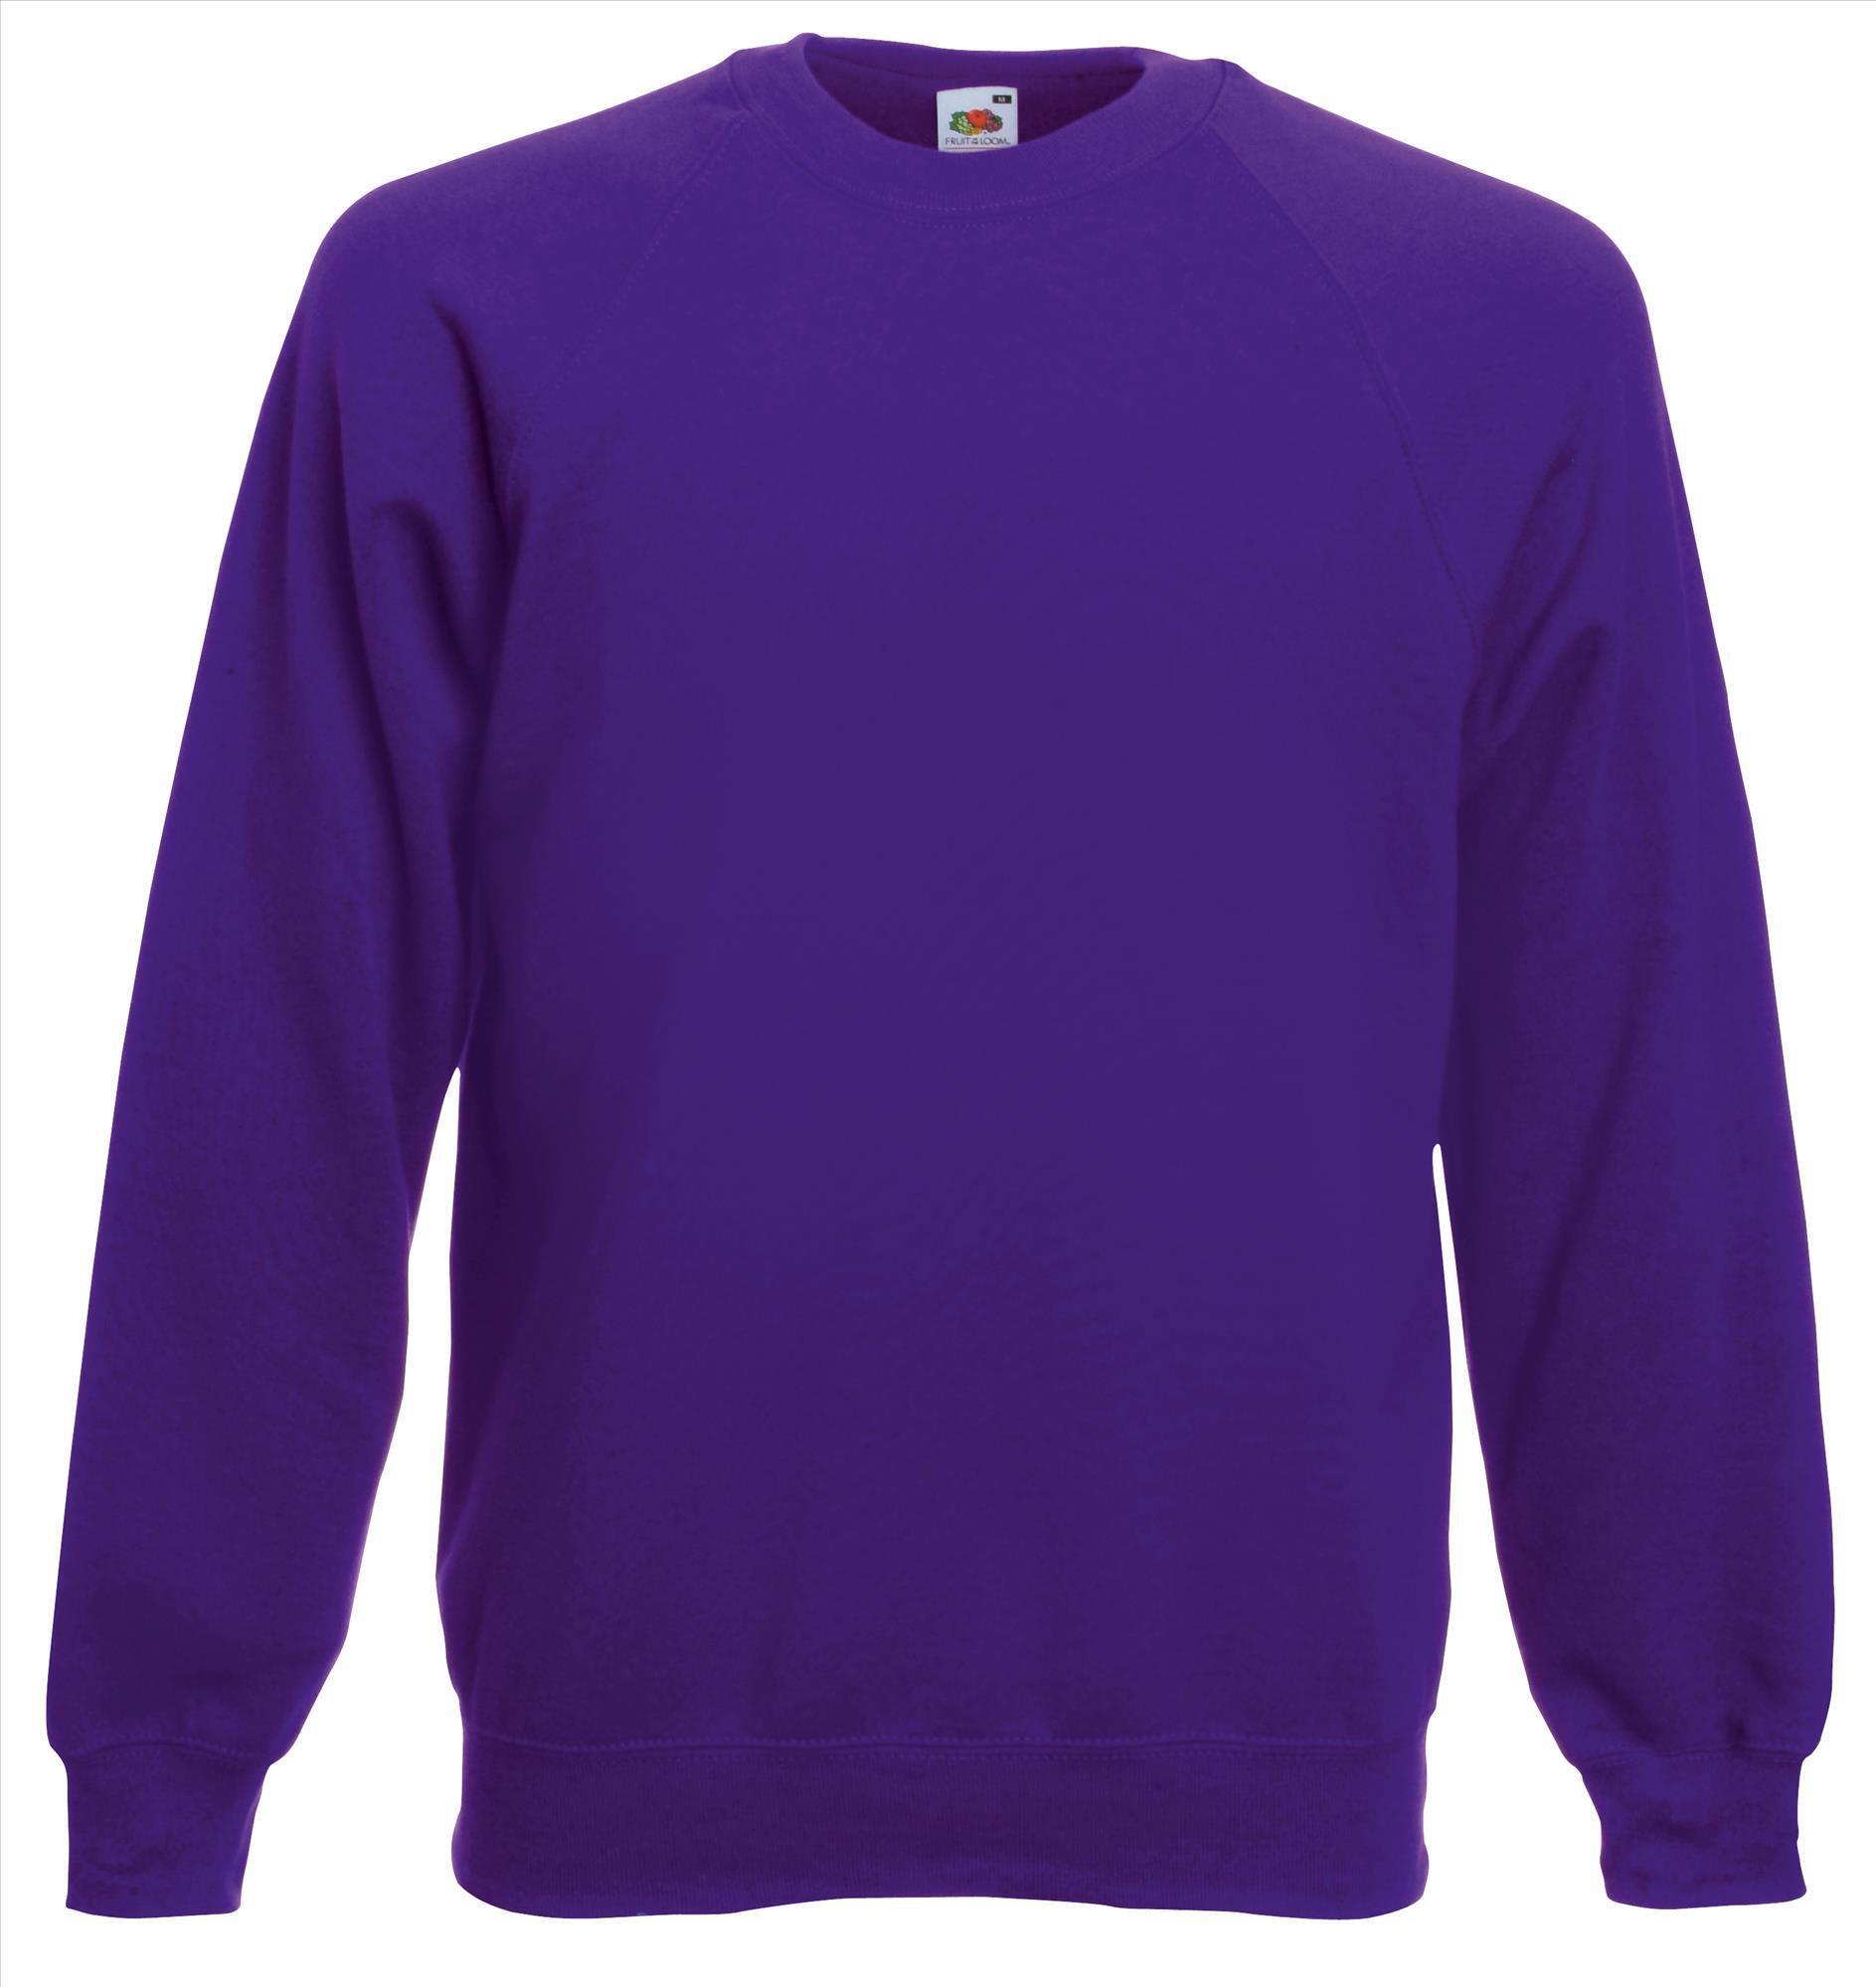 Sweater paars voor mannen bedrukbaar te personaliseren sweatshirts